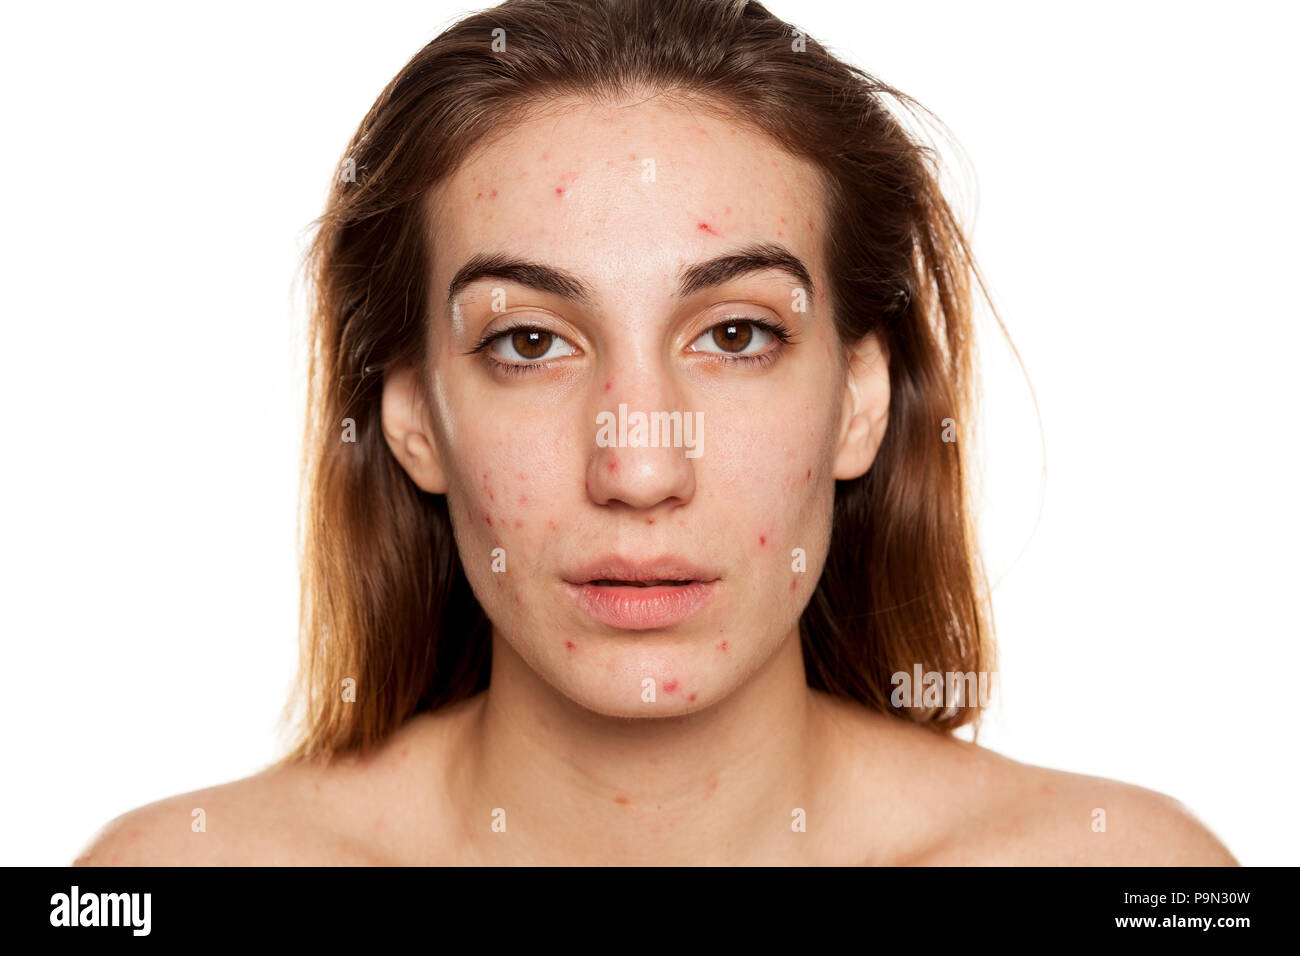 Junge Frau mit problematischer Haut und ohne Make-up Posen auf weißem Hintergrund Stockfoto